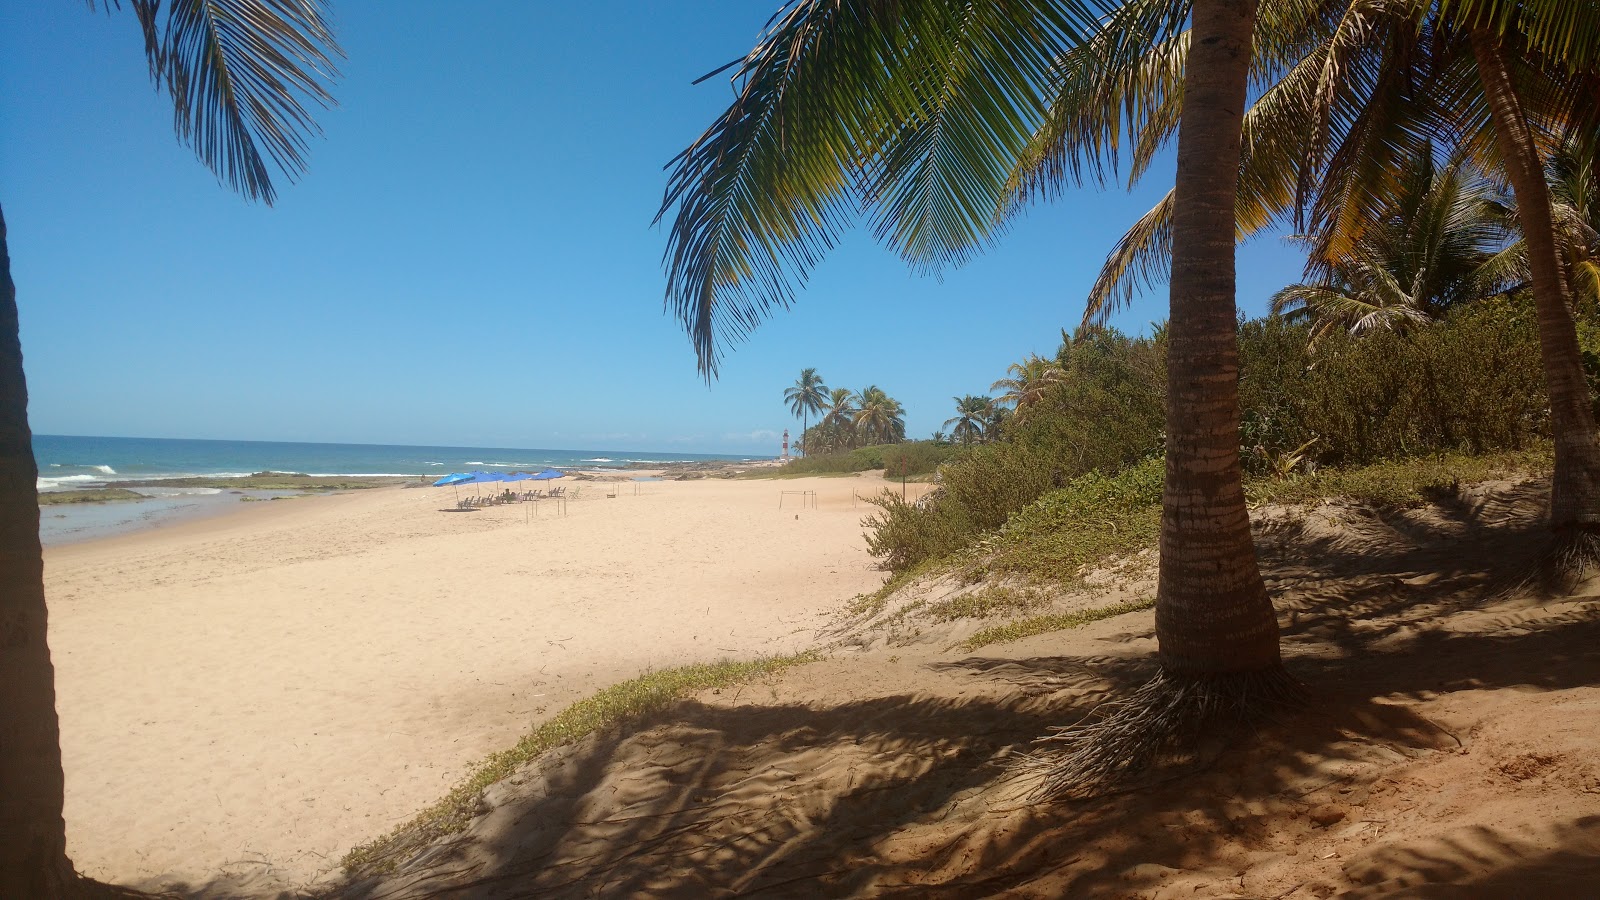 Praia Pedra do Sal'in fotoğrafı geniş plaj ile birlikte